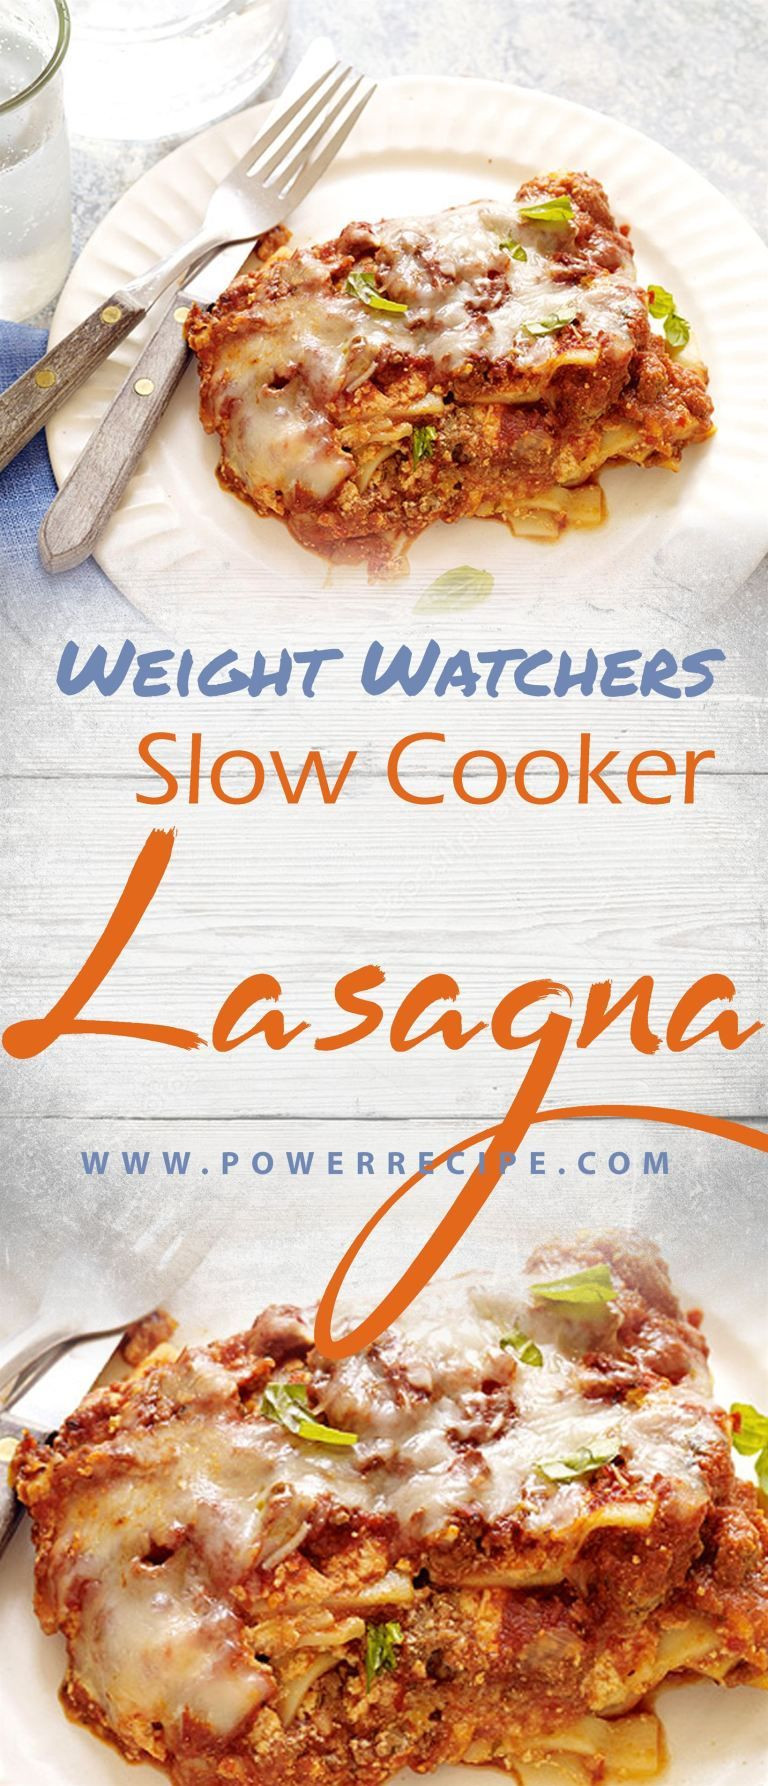 Weight Watcher Slow Cooker Lasagna
 Slow Cooker Lasagna